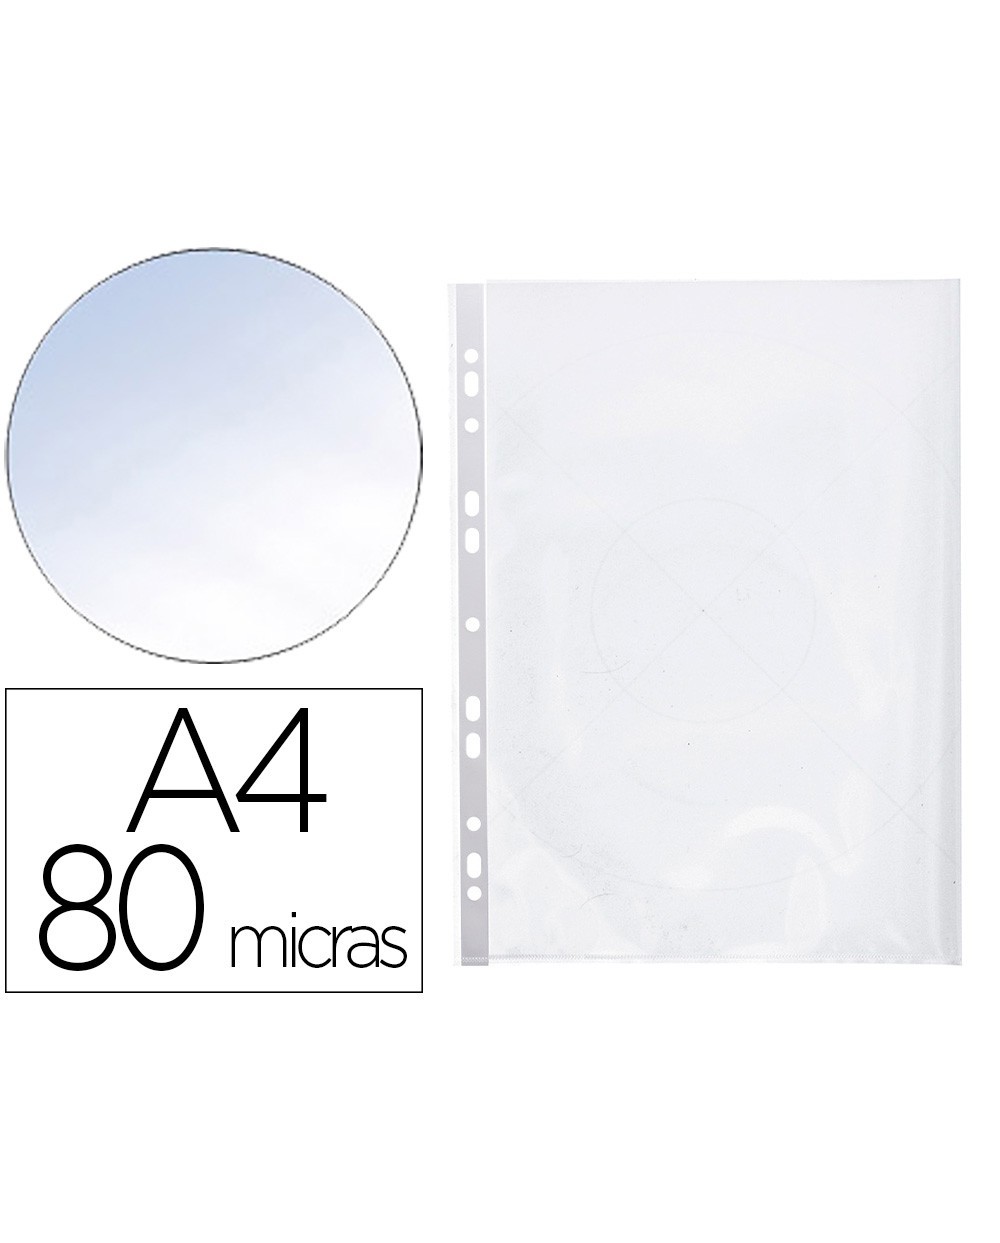 Fundas multitaladro transparente cristal de 80 micras tamaño A4